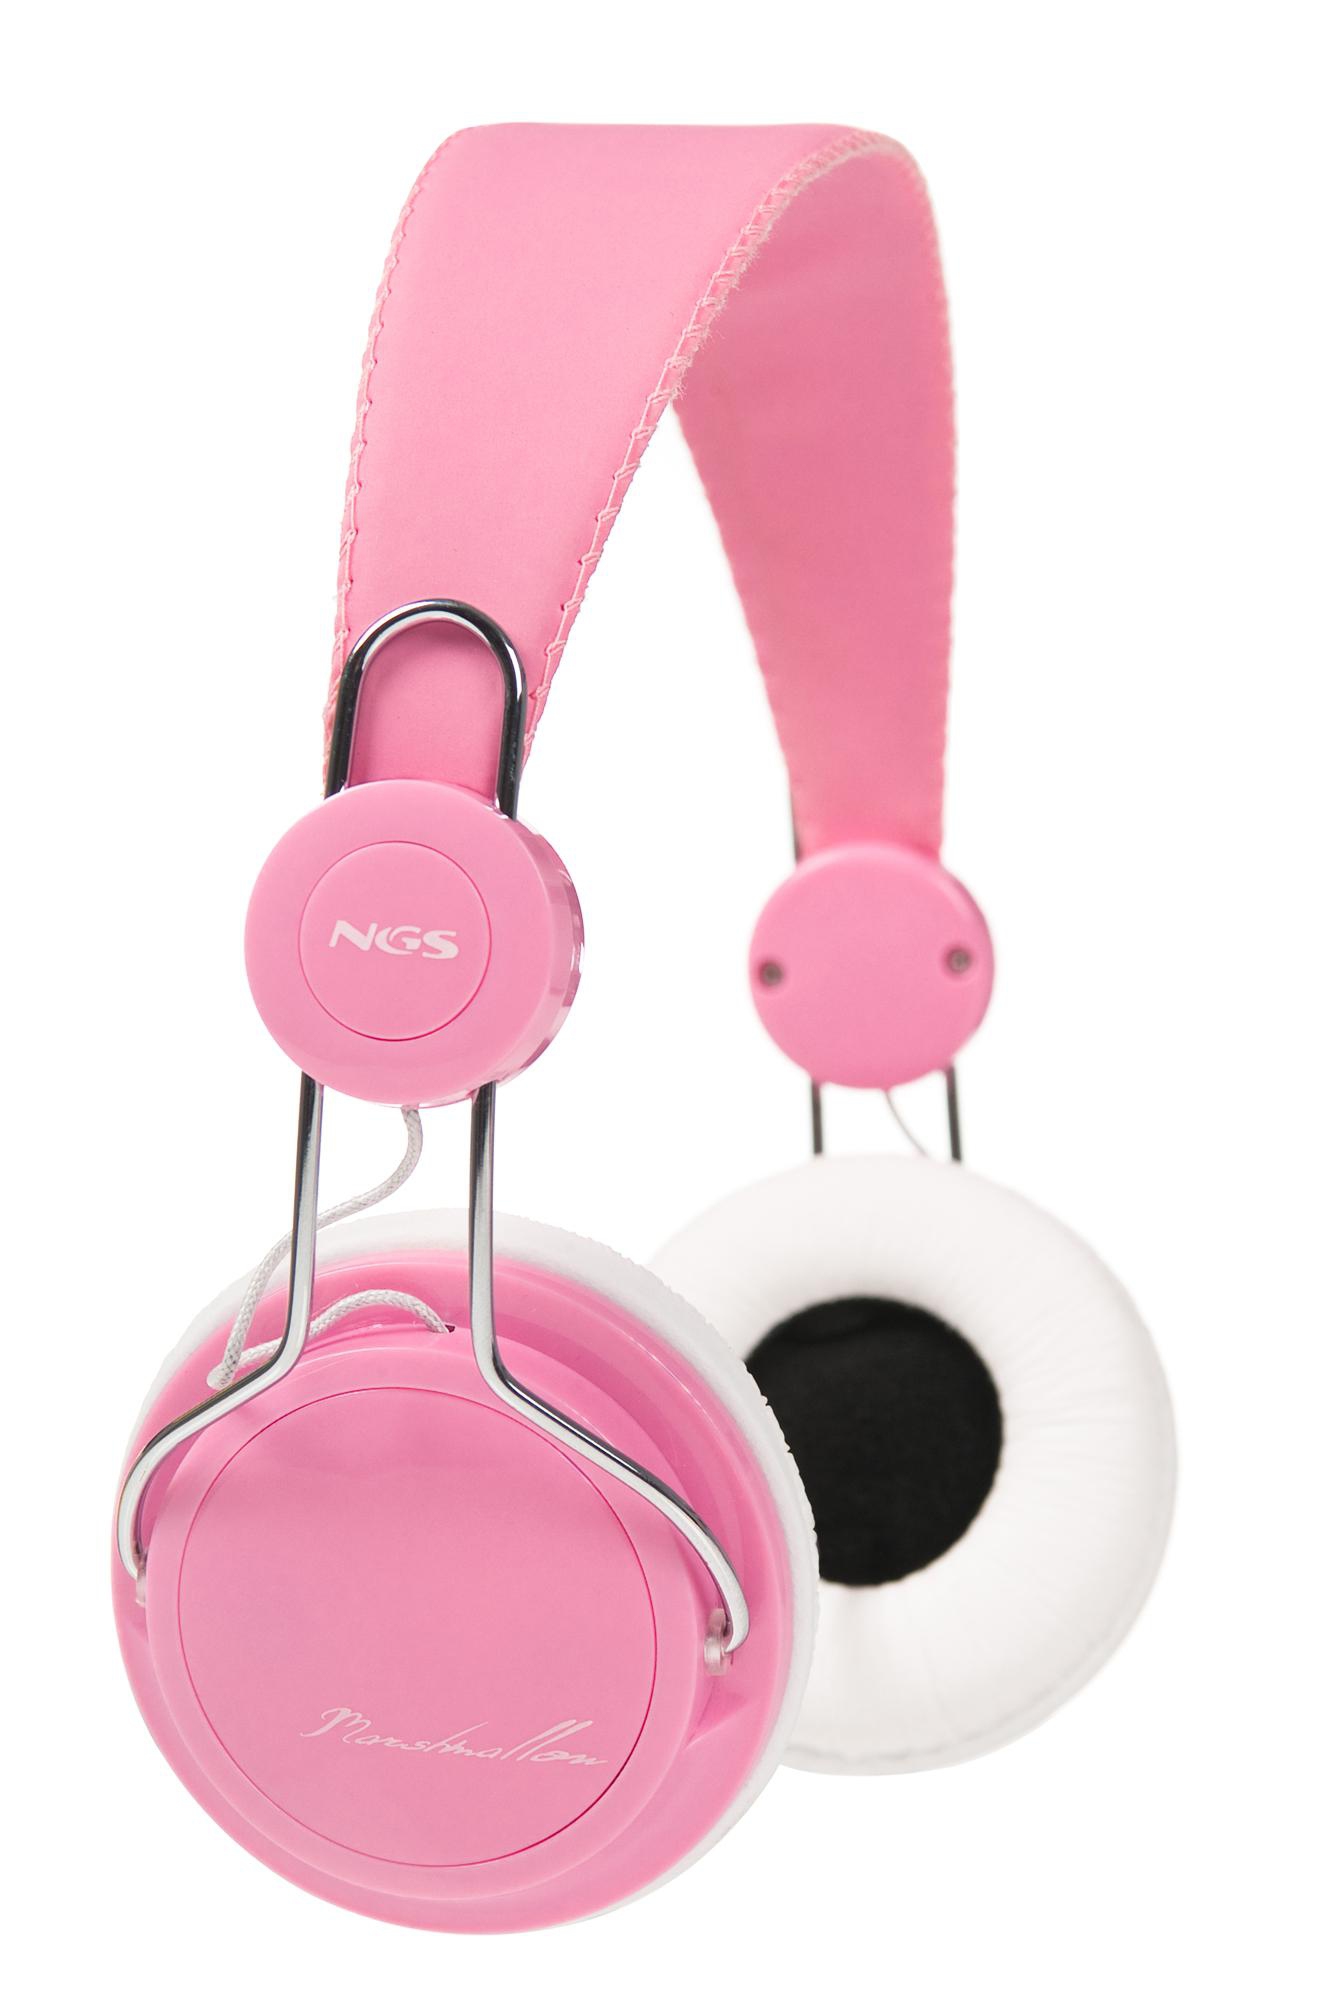 NGS pink design audio headphones